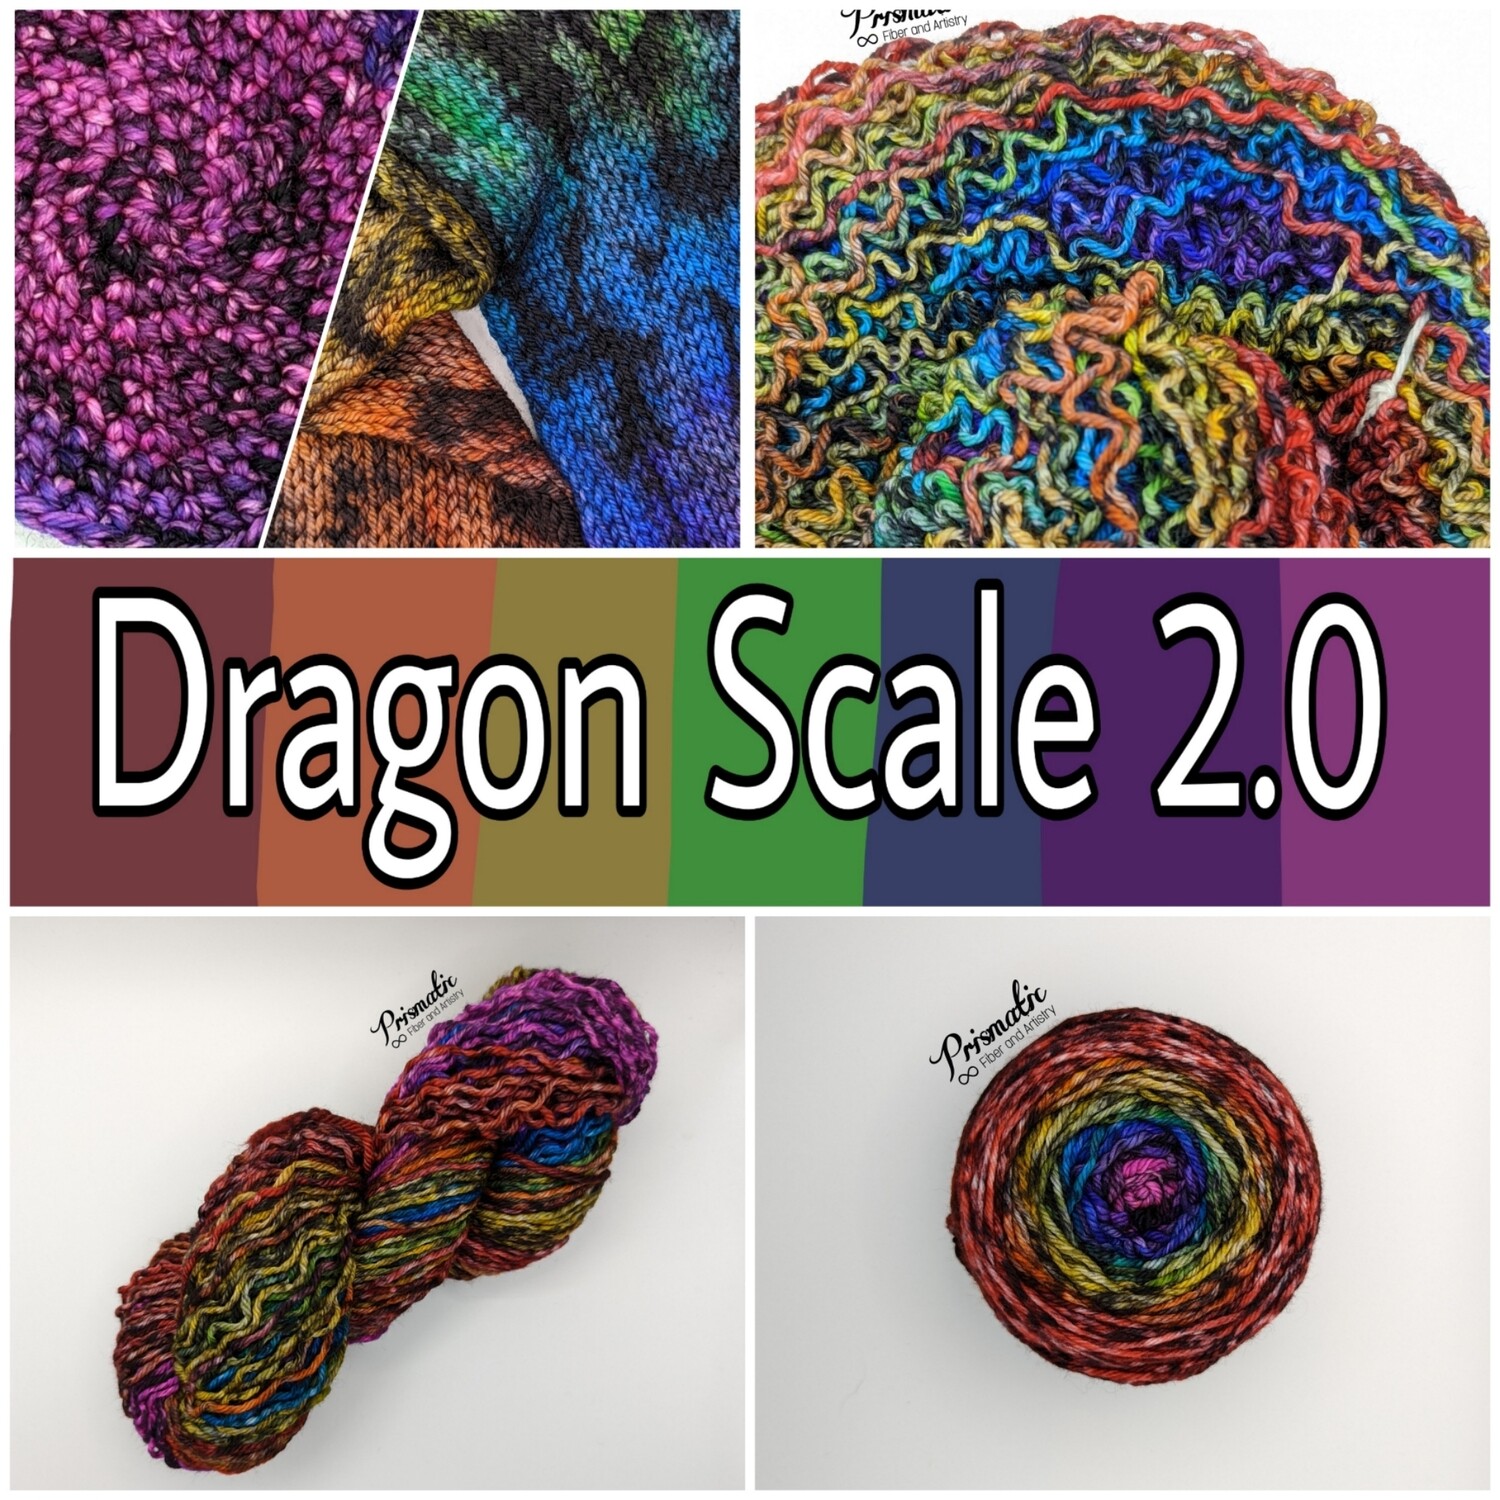 Dragon Scale 2.0 Yarn